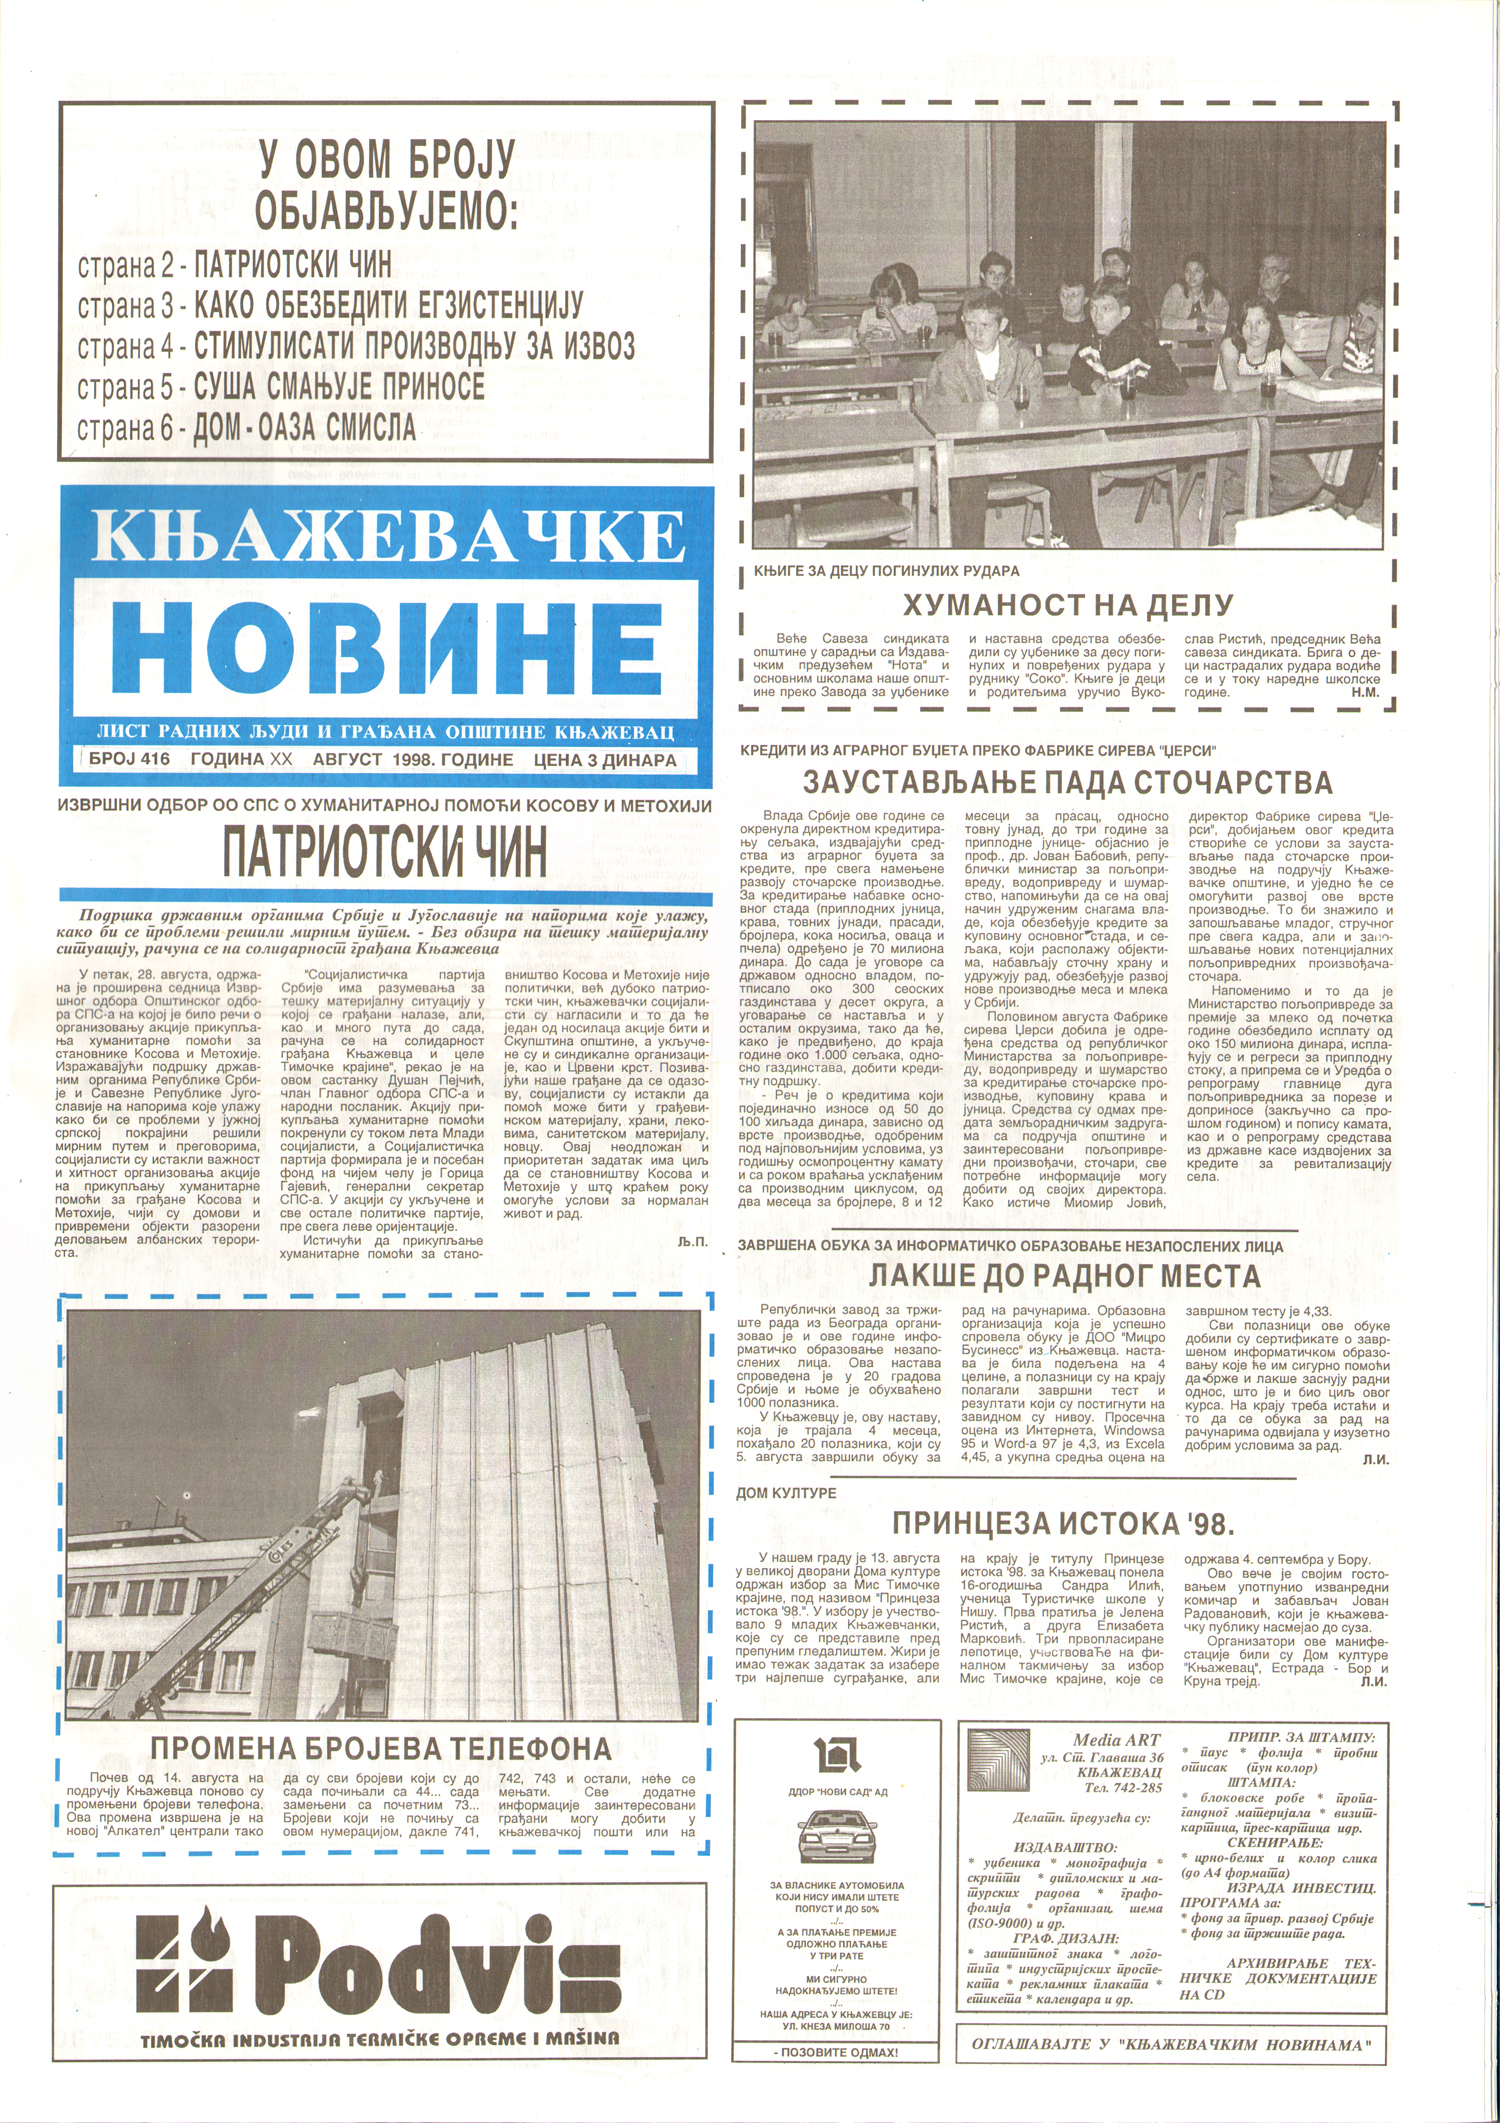 Књажевачке новине, број 416, година 1998